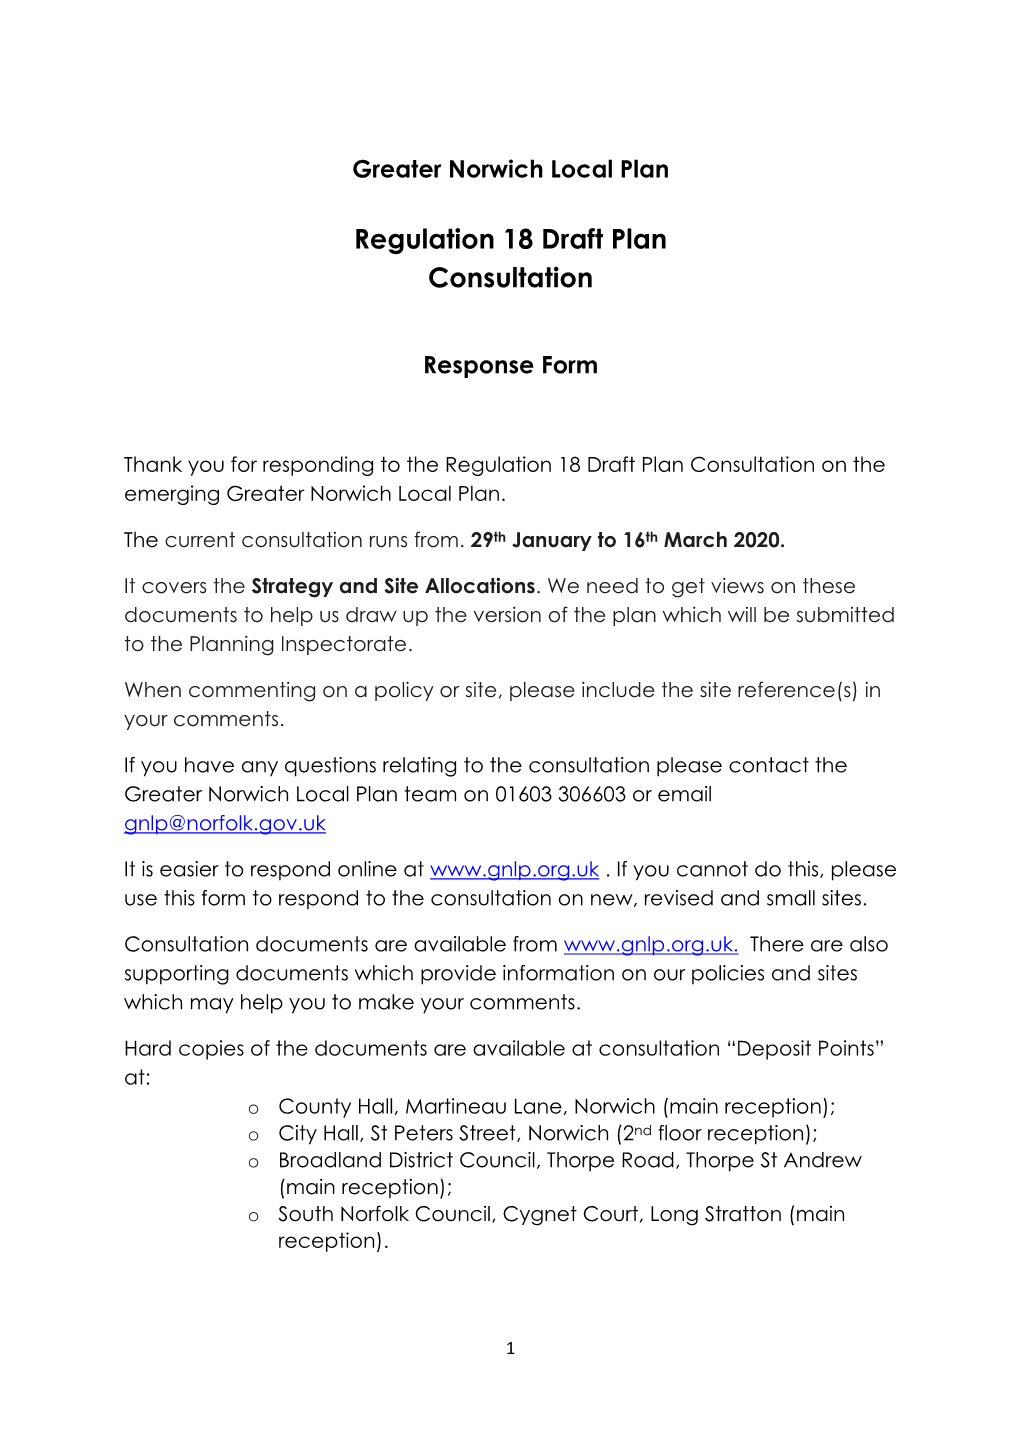 Regulation 18 Draft Plan Consultation